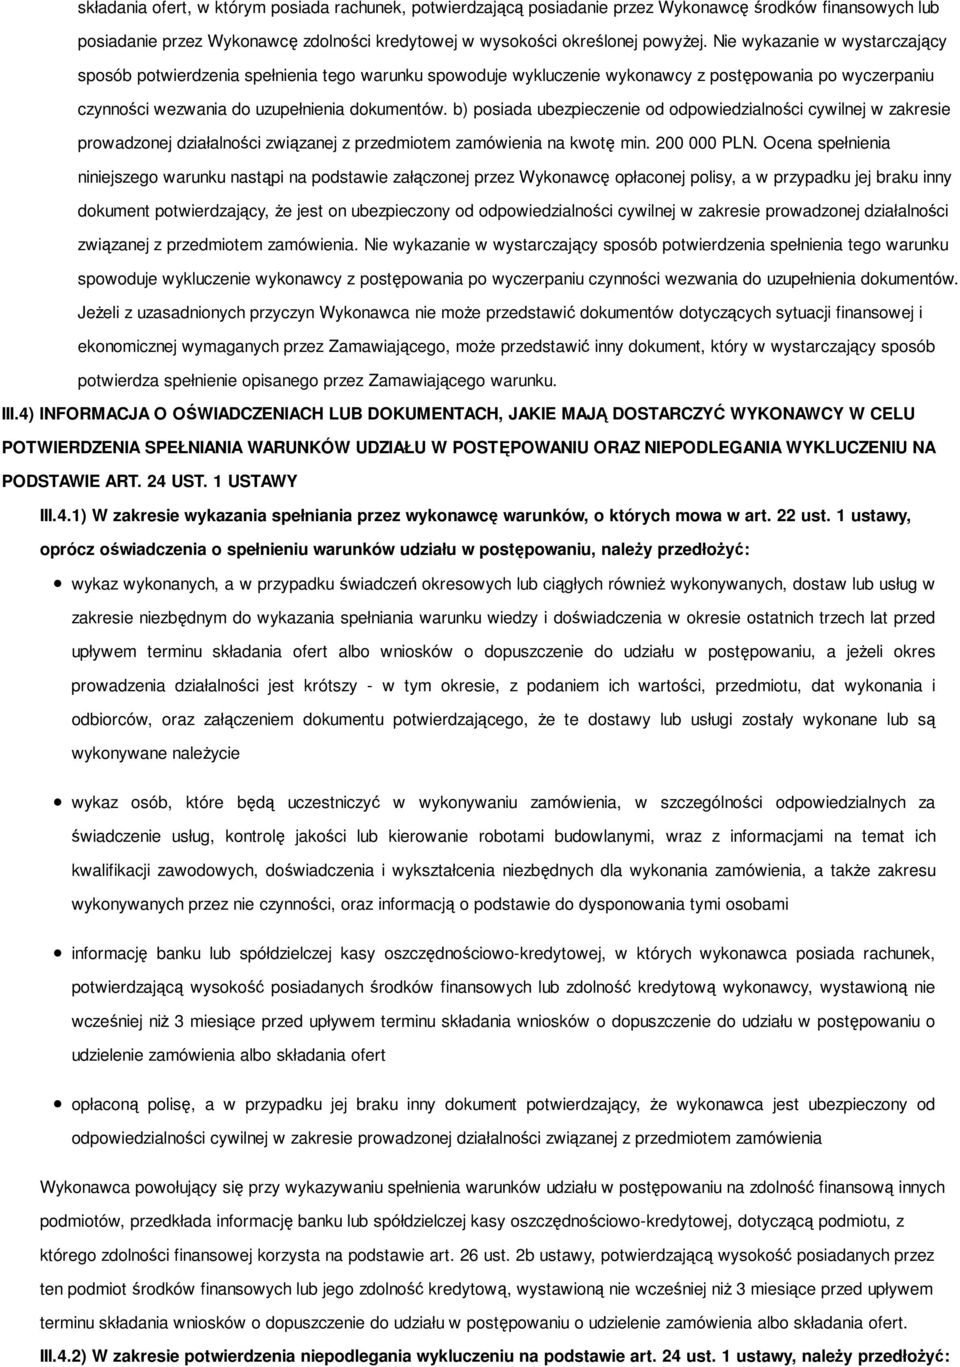 b) posiada ubezpieczenie od odpowiedzialności cywilnej w zakresie prowadzonej działalności związanej z przedmiotem zamówienia na kwotę min. 200 000 PLN.